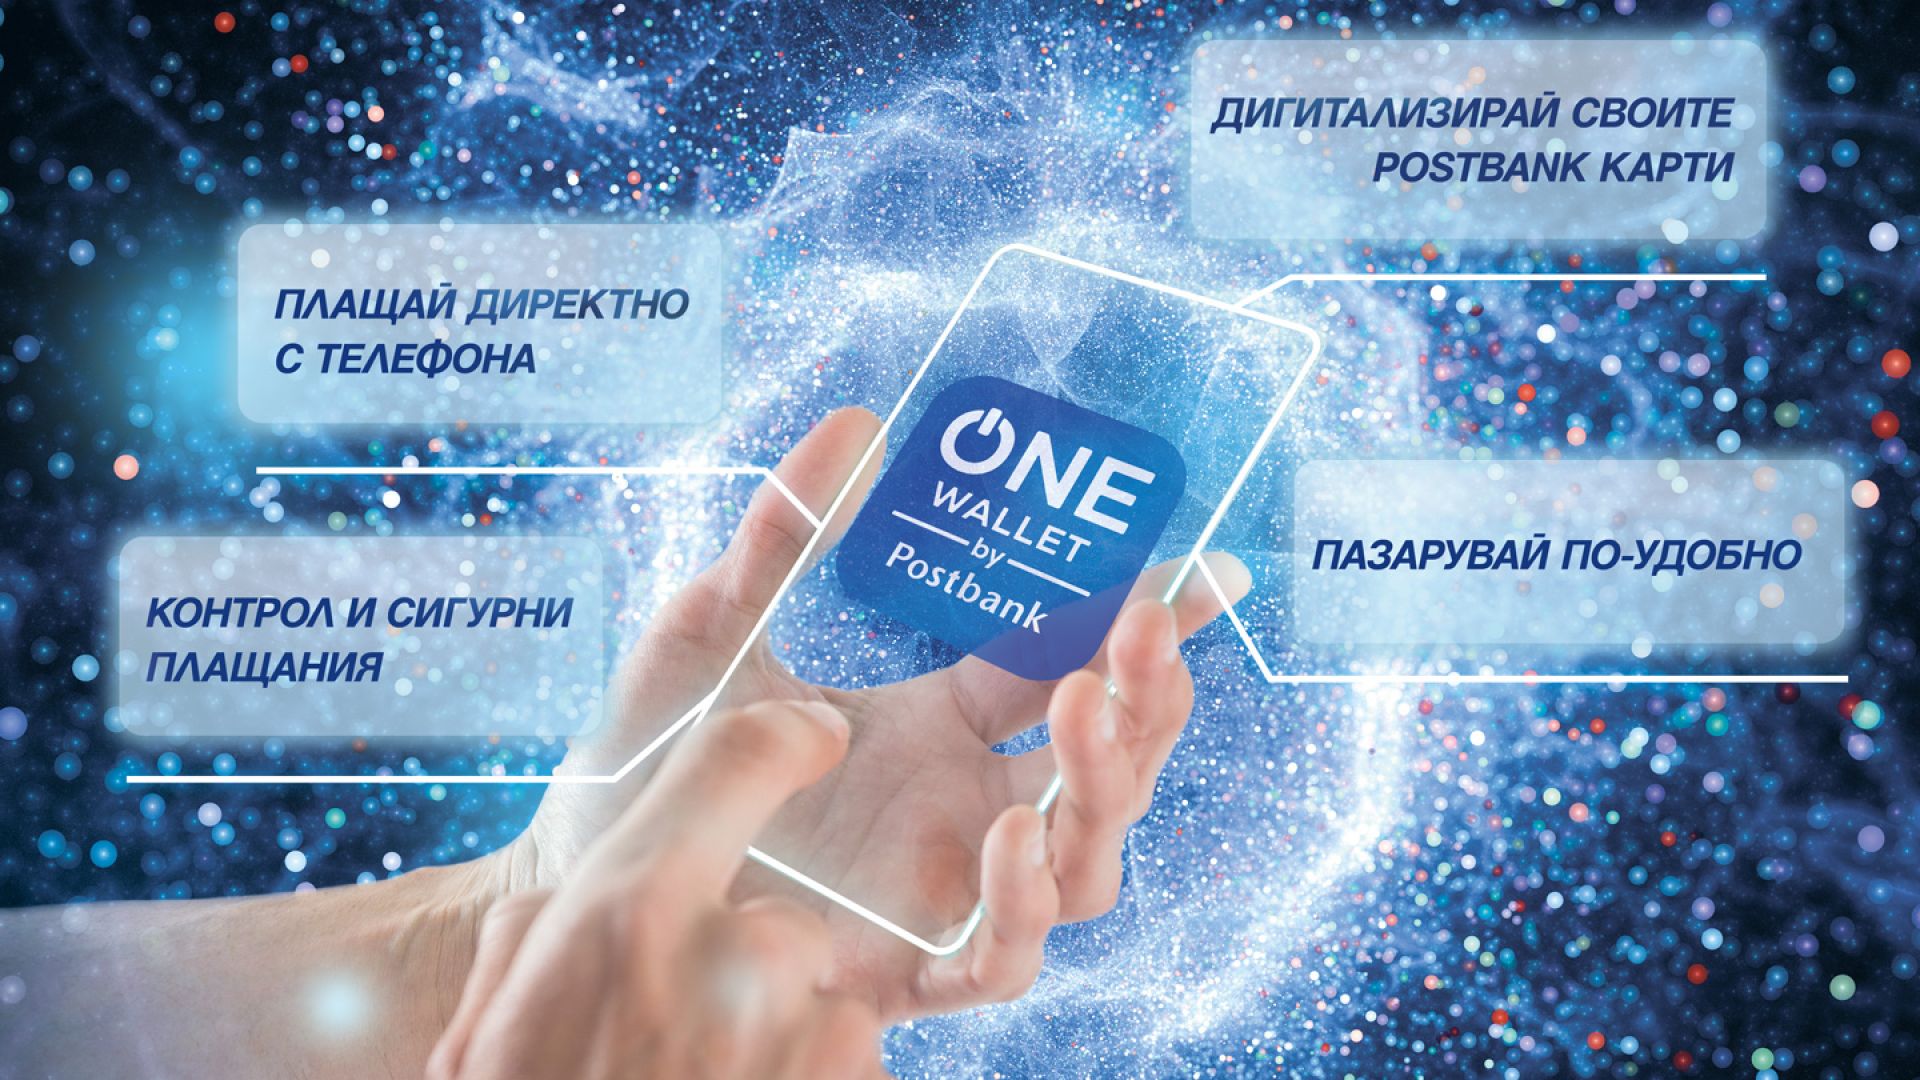 Пощенска банка представя ONE wallet – мобилен портфейл от последно поколение